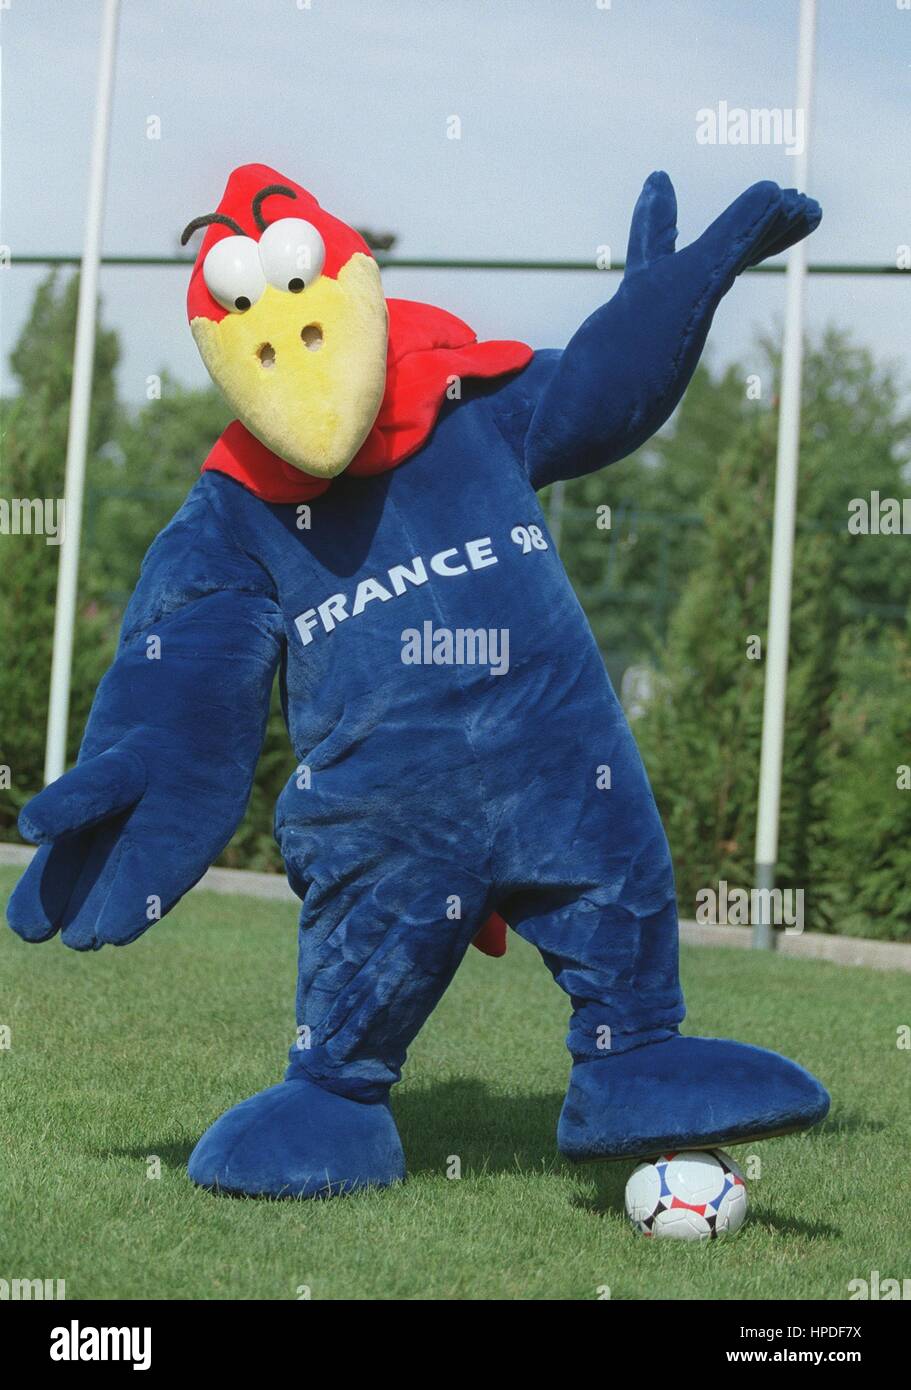 Francia 98 mascota finales de la Copa Mundial Francia 98 18 de junio de  1997 Fotografía de stock - Alamy